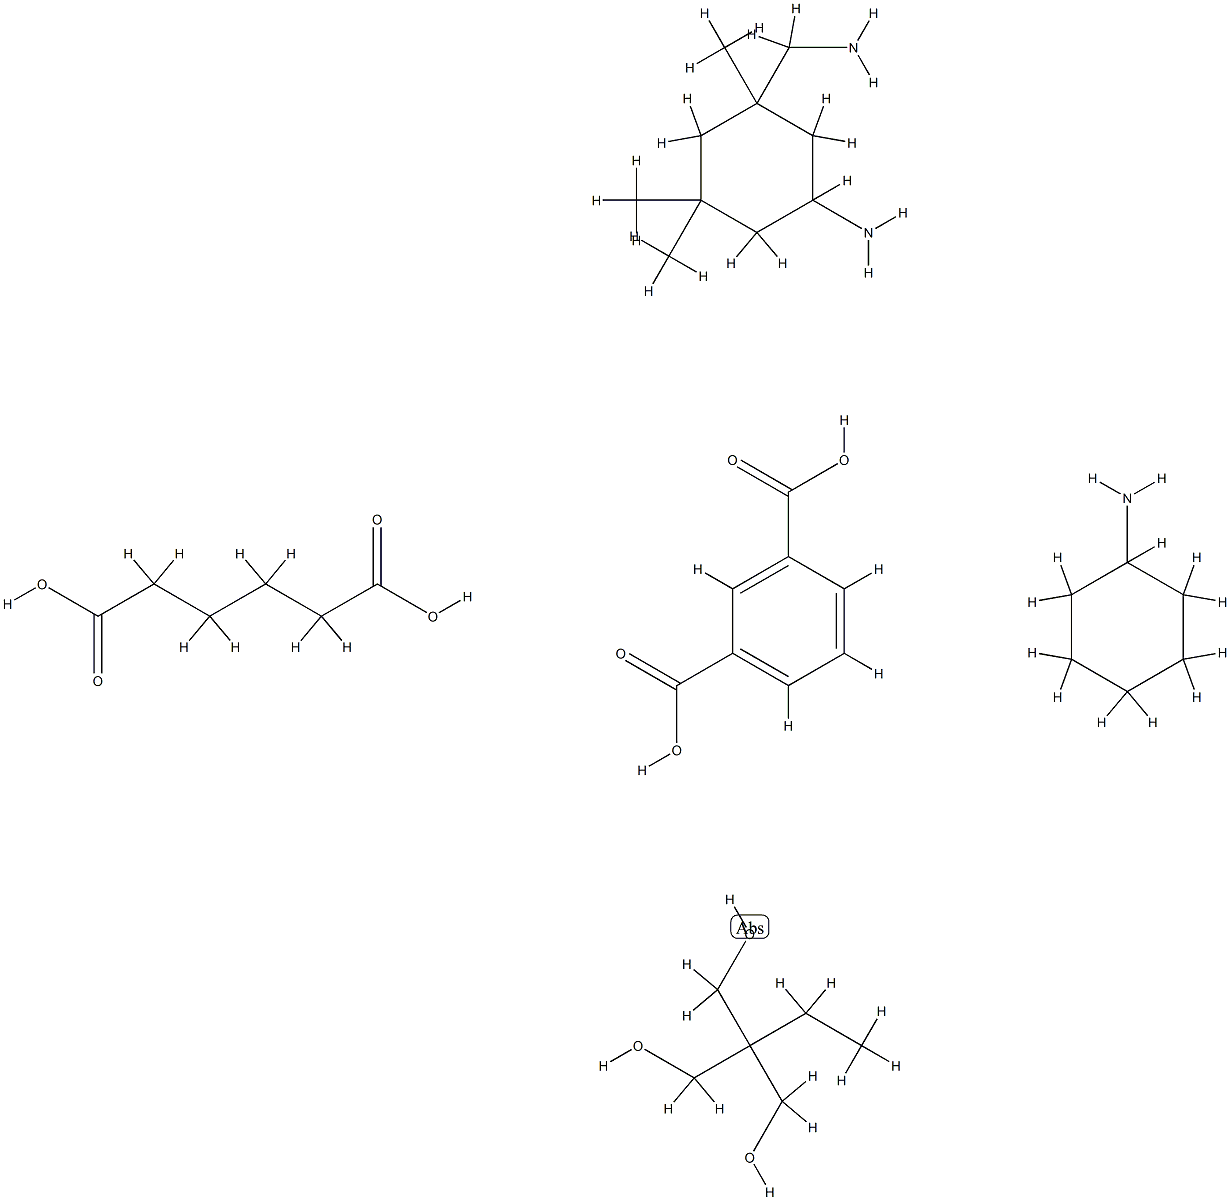 1,3-Benzenedicarboxylic acid, polymer with 5-amino-1,3,3-trimethylcyclohexanemethanamine, 2-ethyl-2-(hydroxymethyl)-1,3-propanediol and hexanedioic acid, cyclohexylamine-modified|